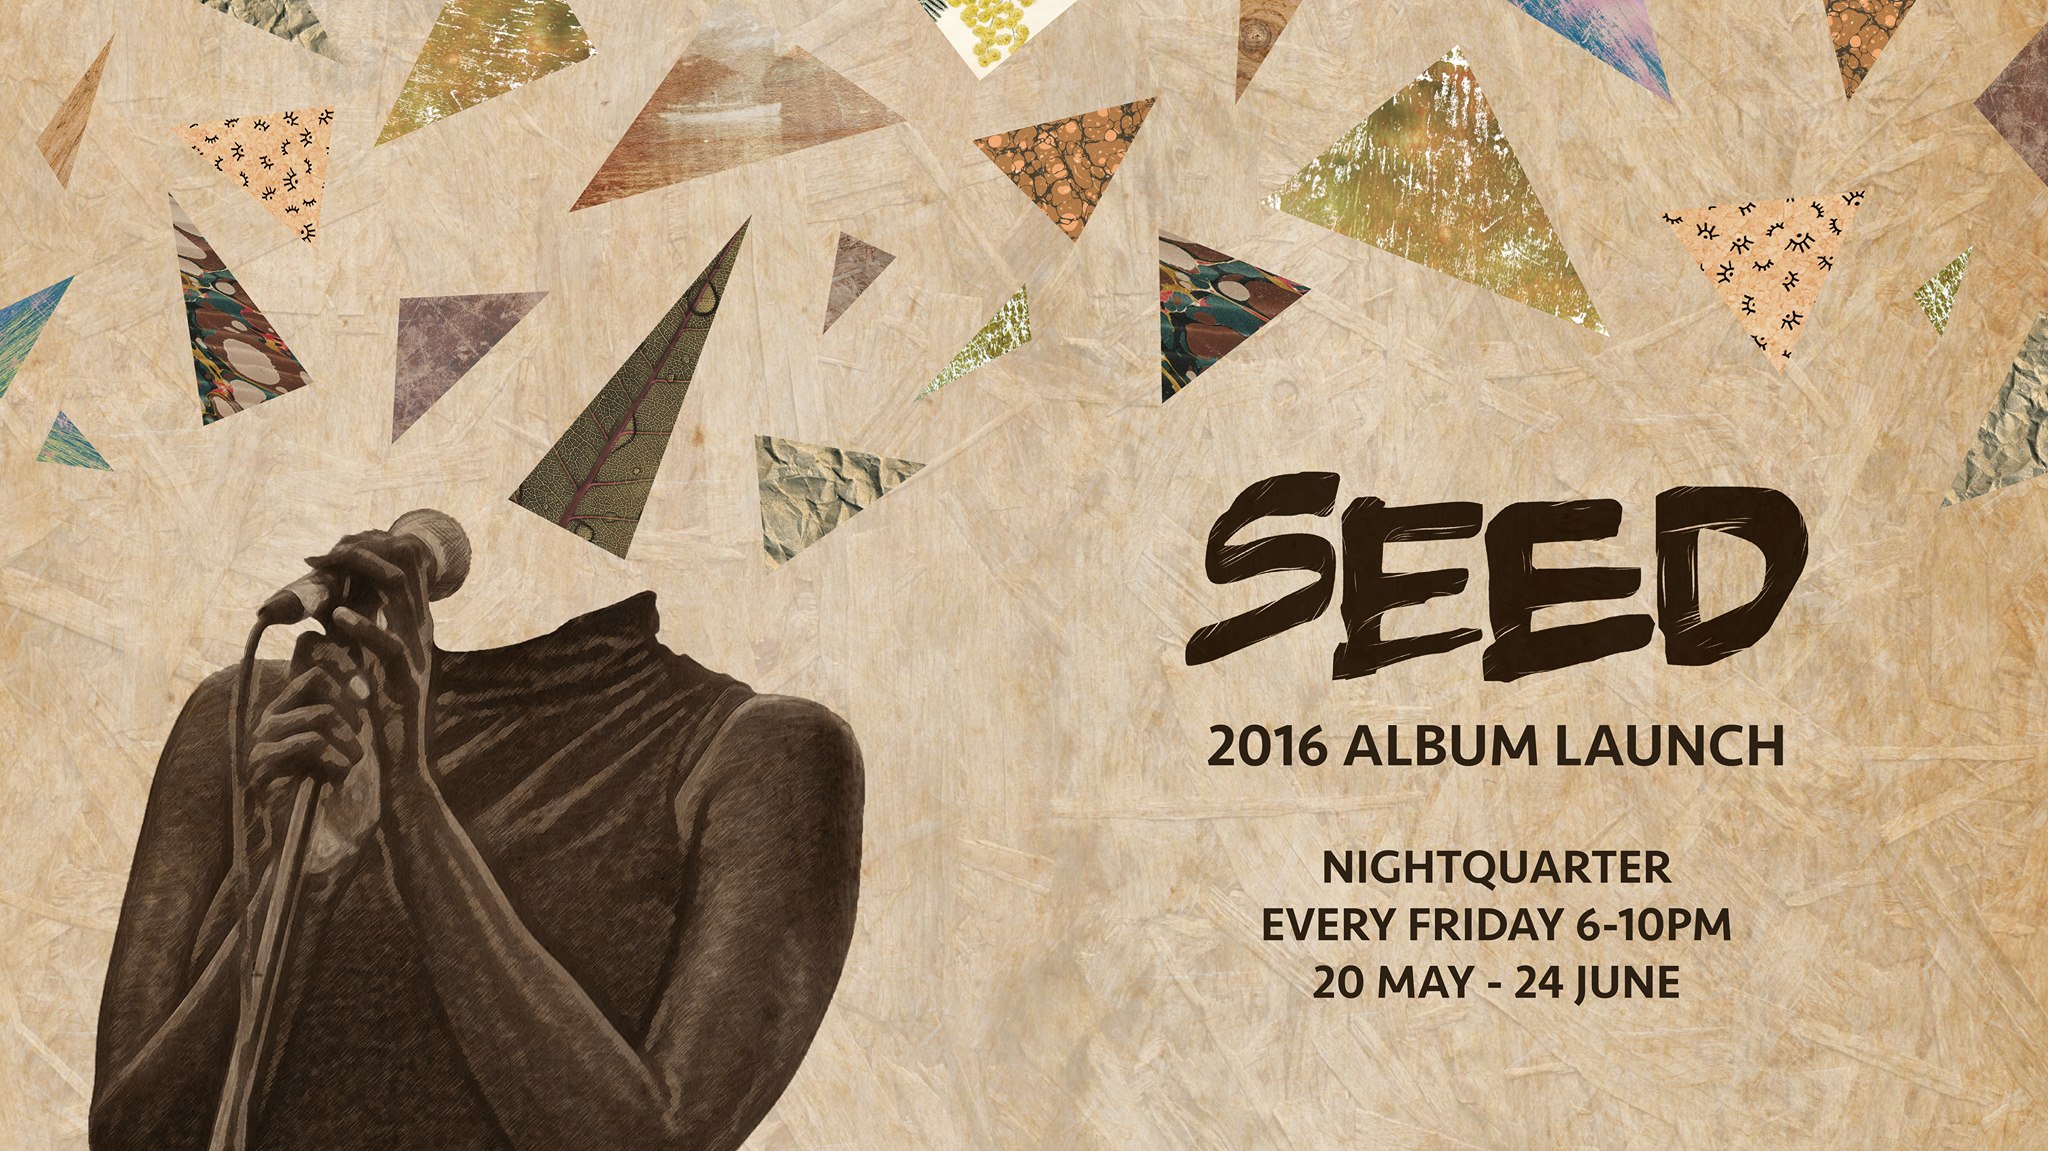 SEED VOL 5 Album Launch Series at Nightquarter